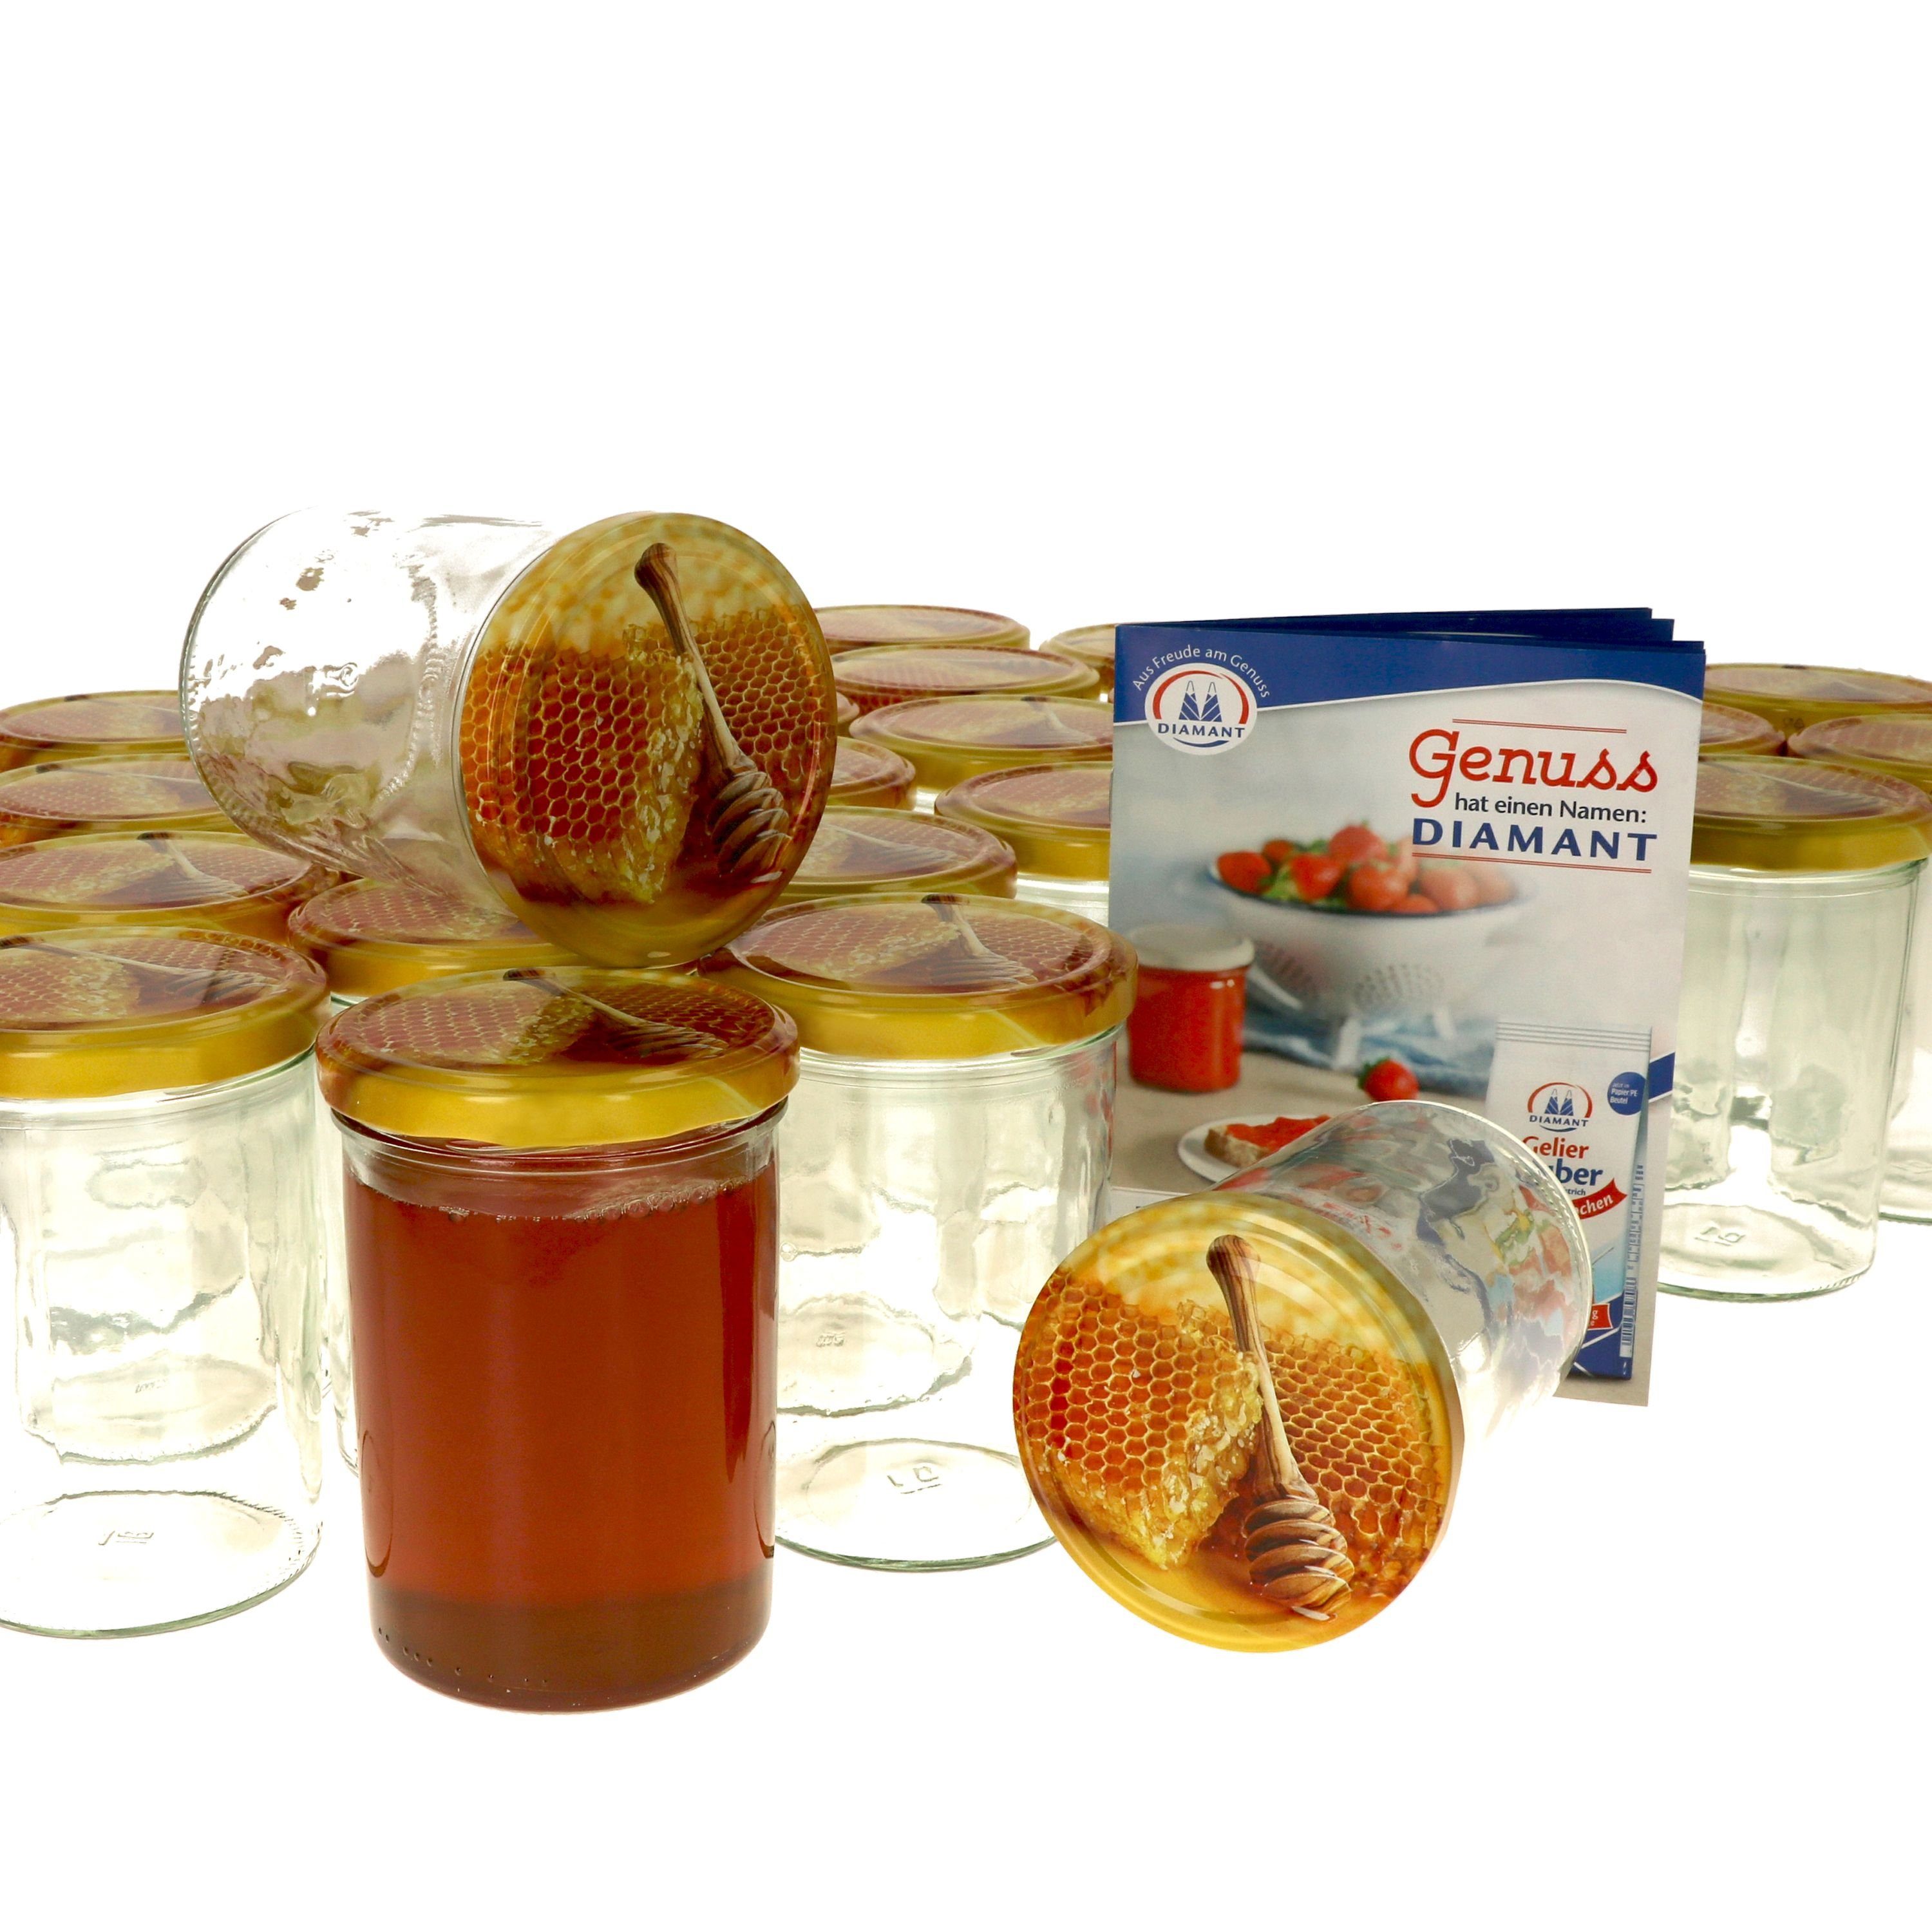 MamboCat Einmachglas Sturzglas Honigwabe 435 Set 82 ml mit Rezeptheft, Carino Deckel Glas 50er To